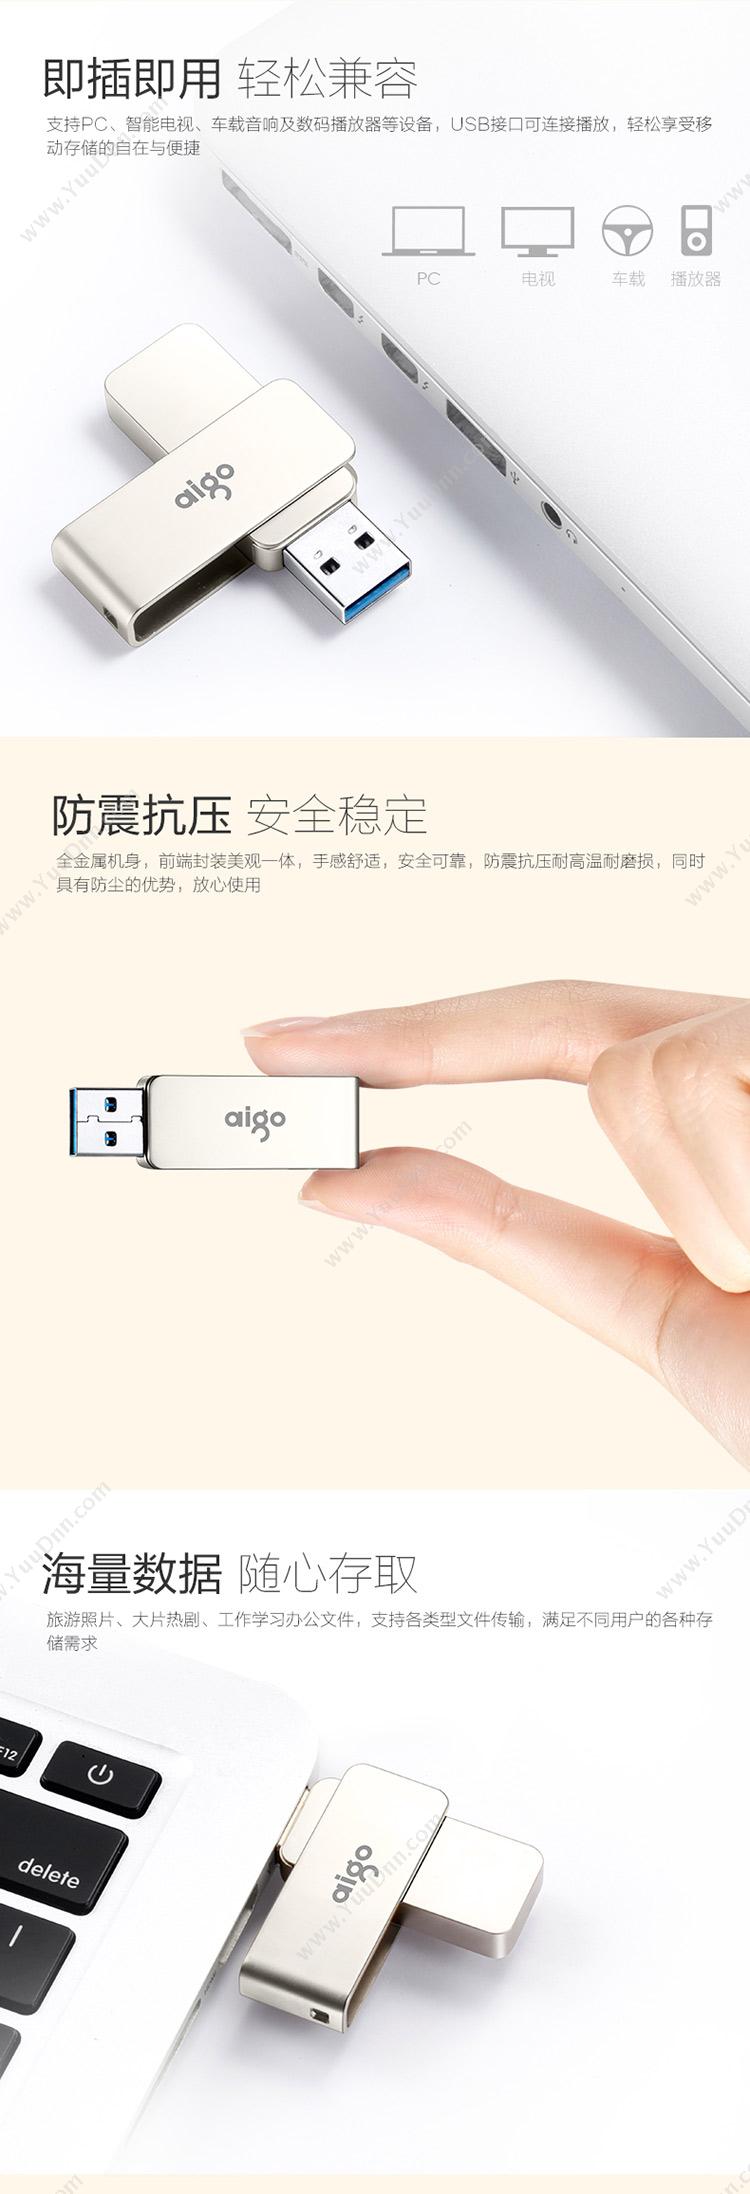 爱国者 Aigo U330  64GB USB3 U盘